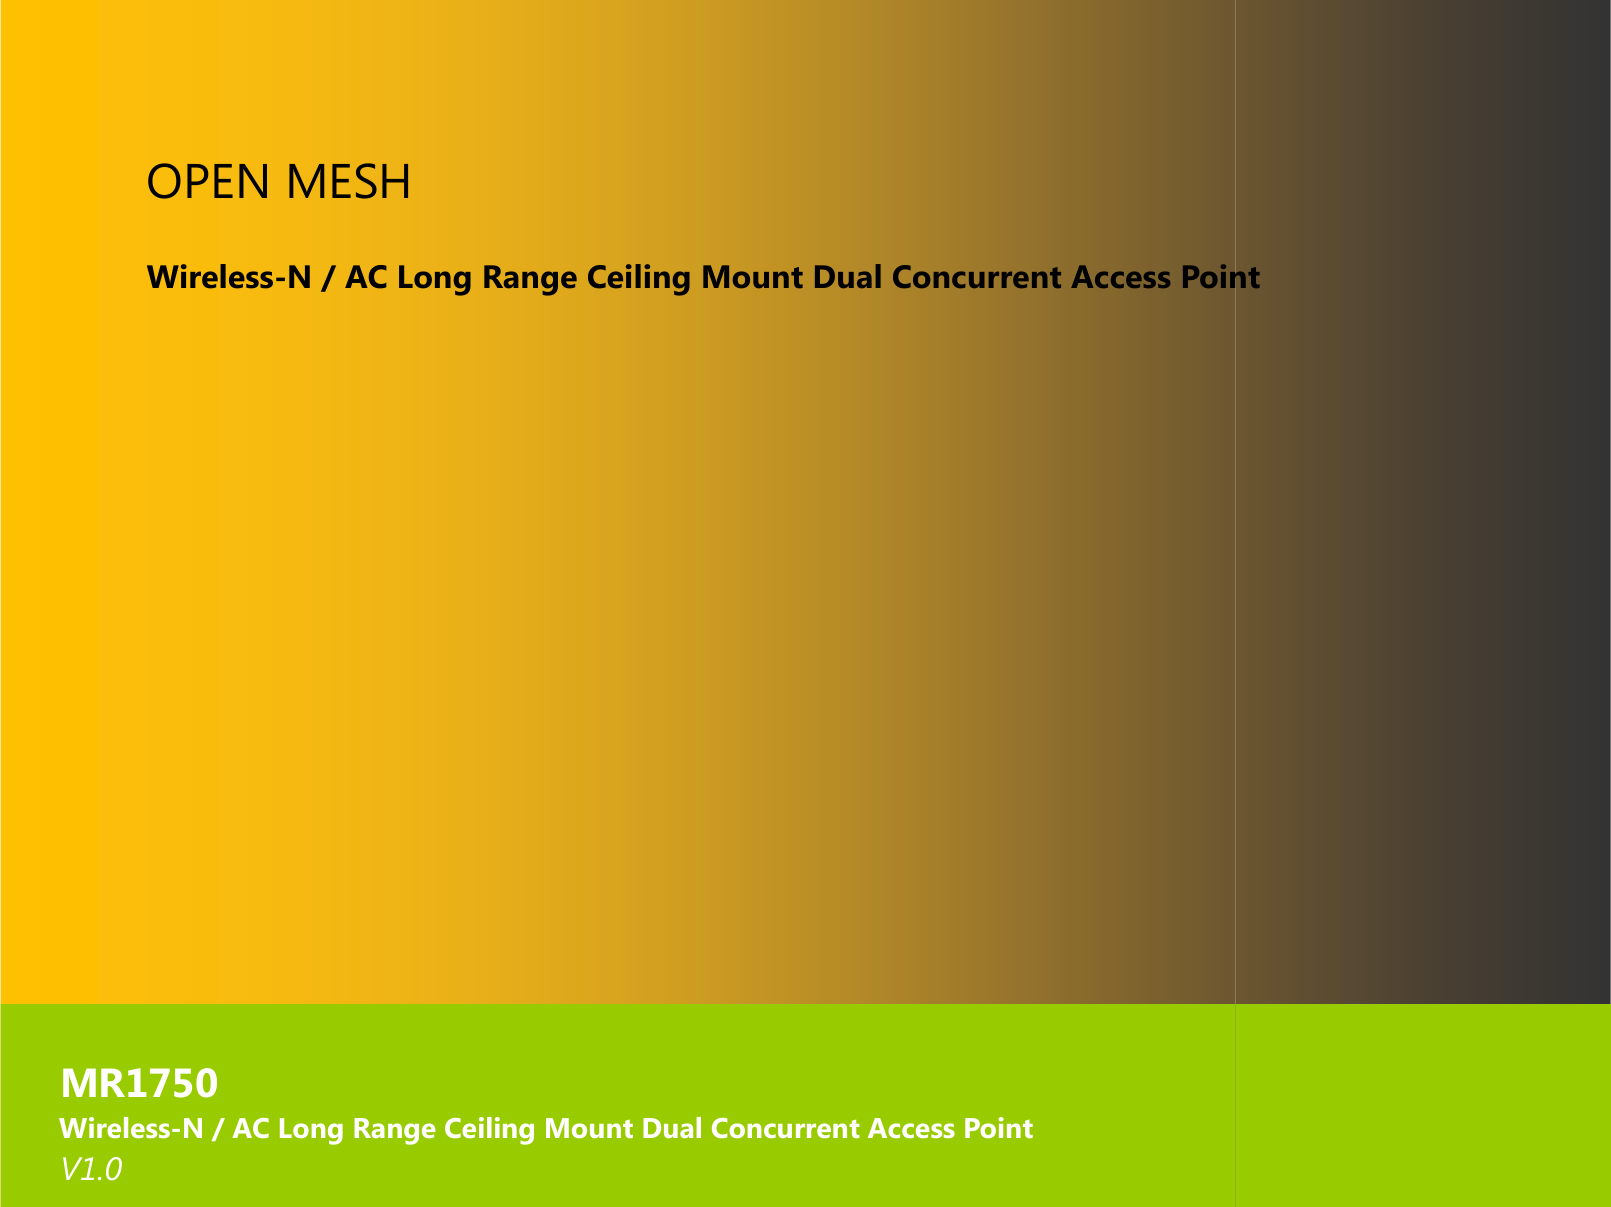 1  OPEN MESH    Wireless-N / AC Long Range Ceiling Mount Dual Concurrent                       MR1750      Wireless-N / AC Long Range Ceiling Mount Dual Concurrent Access Point     V1.0  Long Range Ceiling Mount Dual Concurrent Access PointLong Range Ceiling Mount Dual Concurrent Access Point oint 